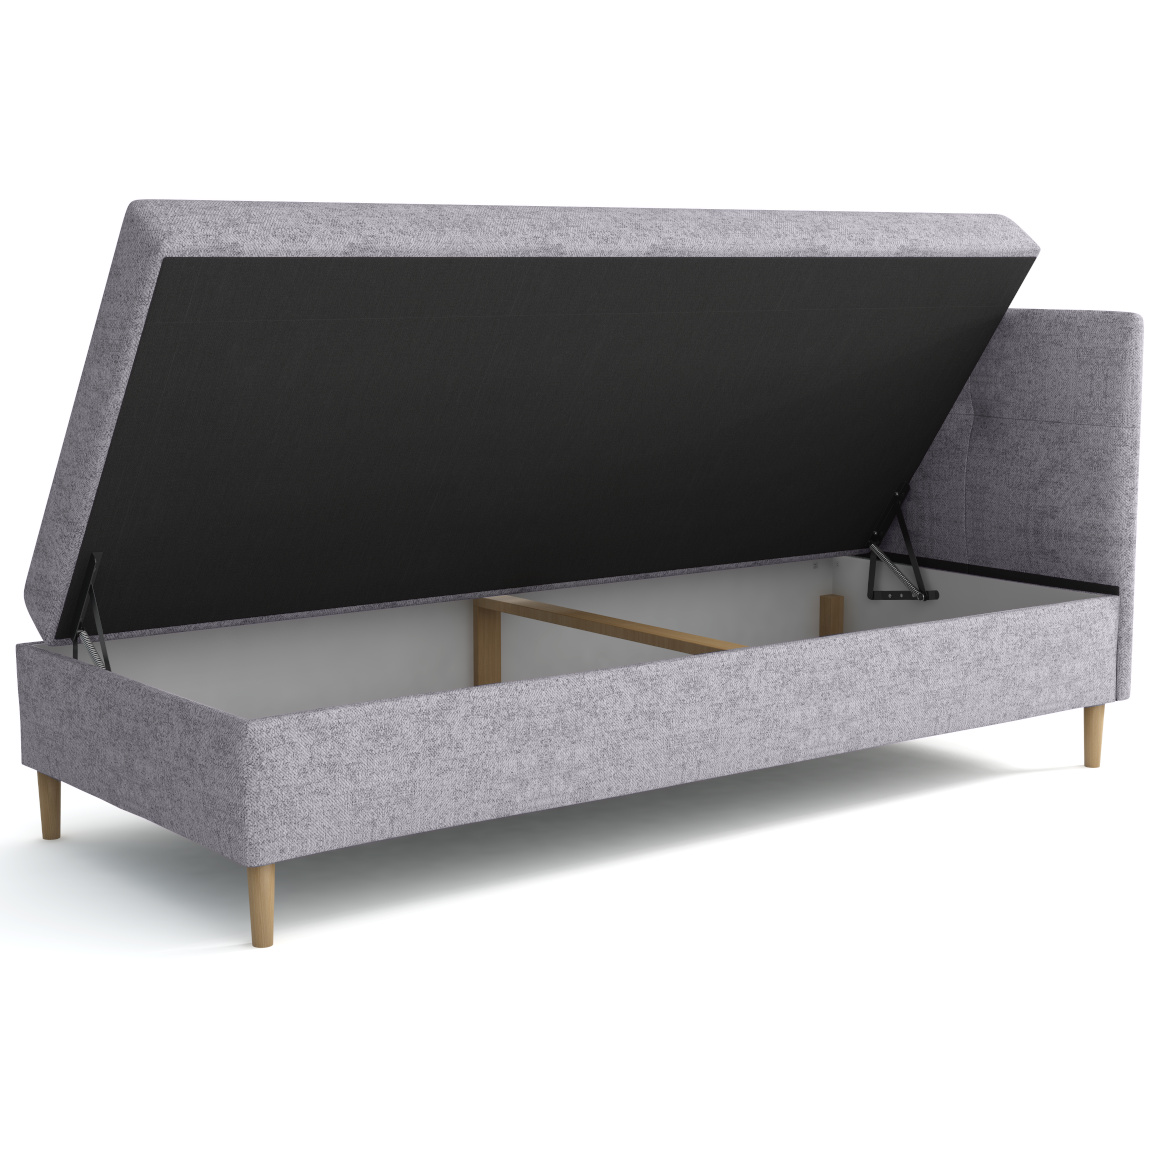 Krevet Enzo sa prostorom za odlaganje desni 82x204x112 cm ljubicasti